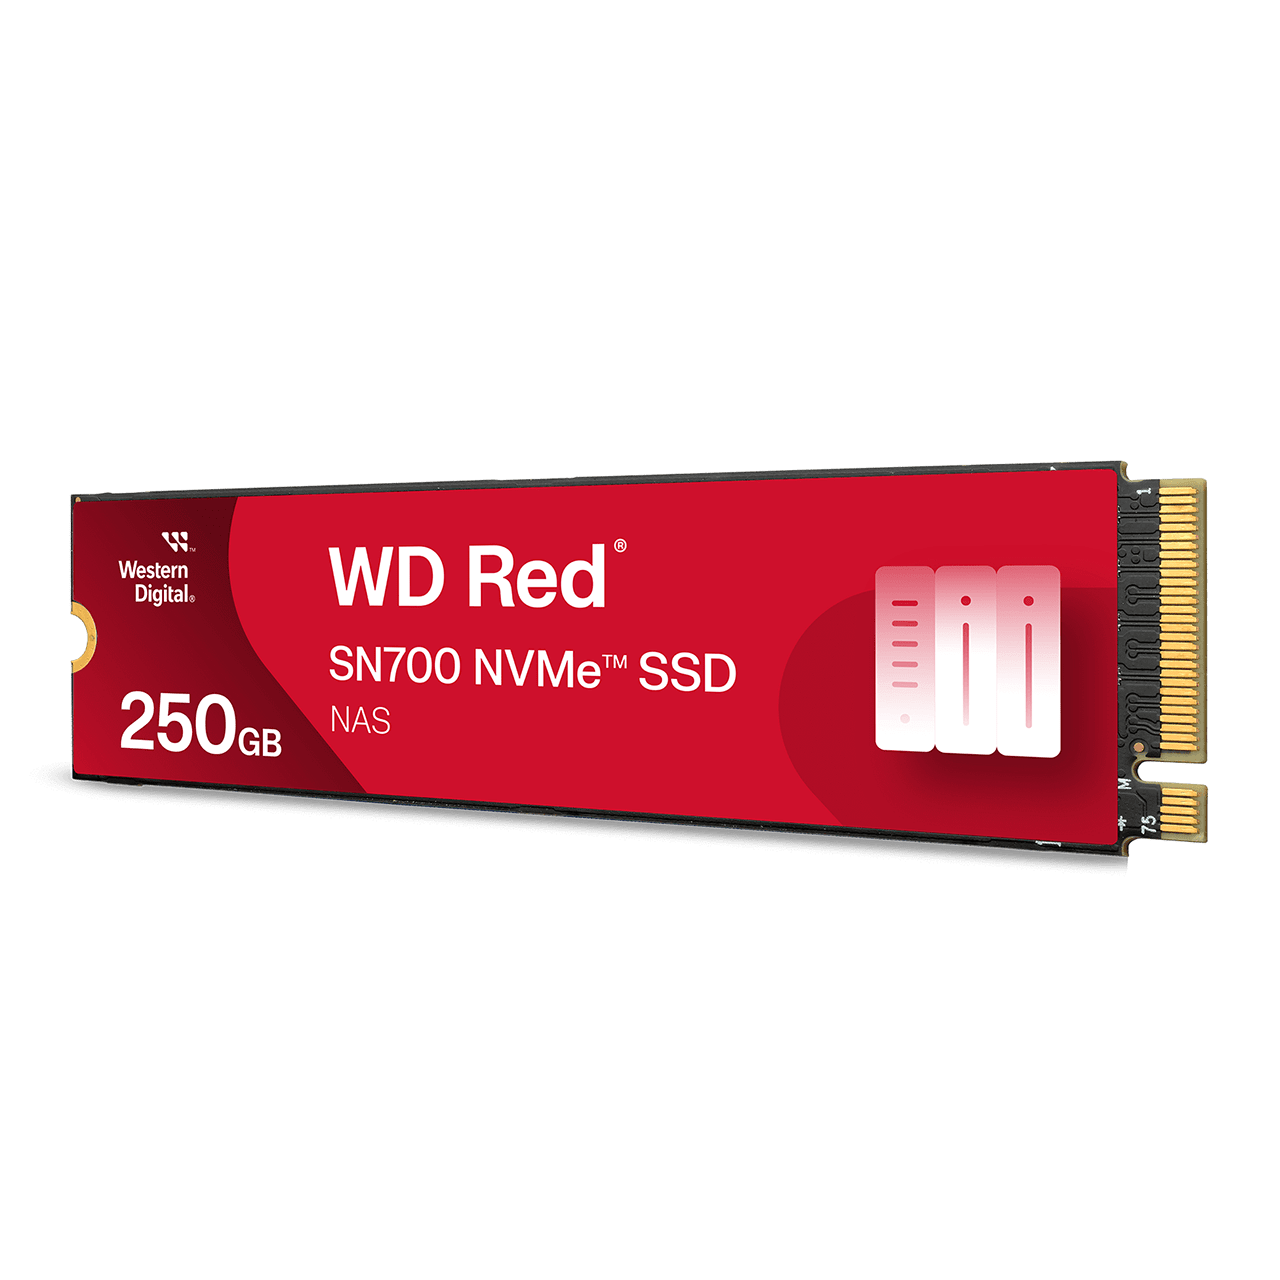 hovedsagelig beskyttelse De er WD Red™ SN700 NVMe™ SSD | Western Digital